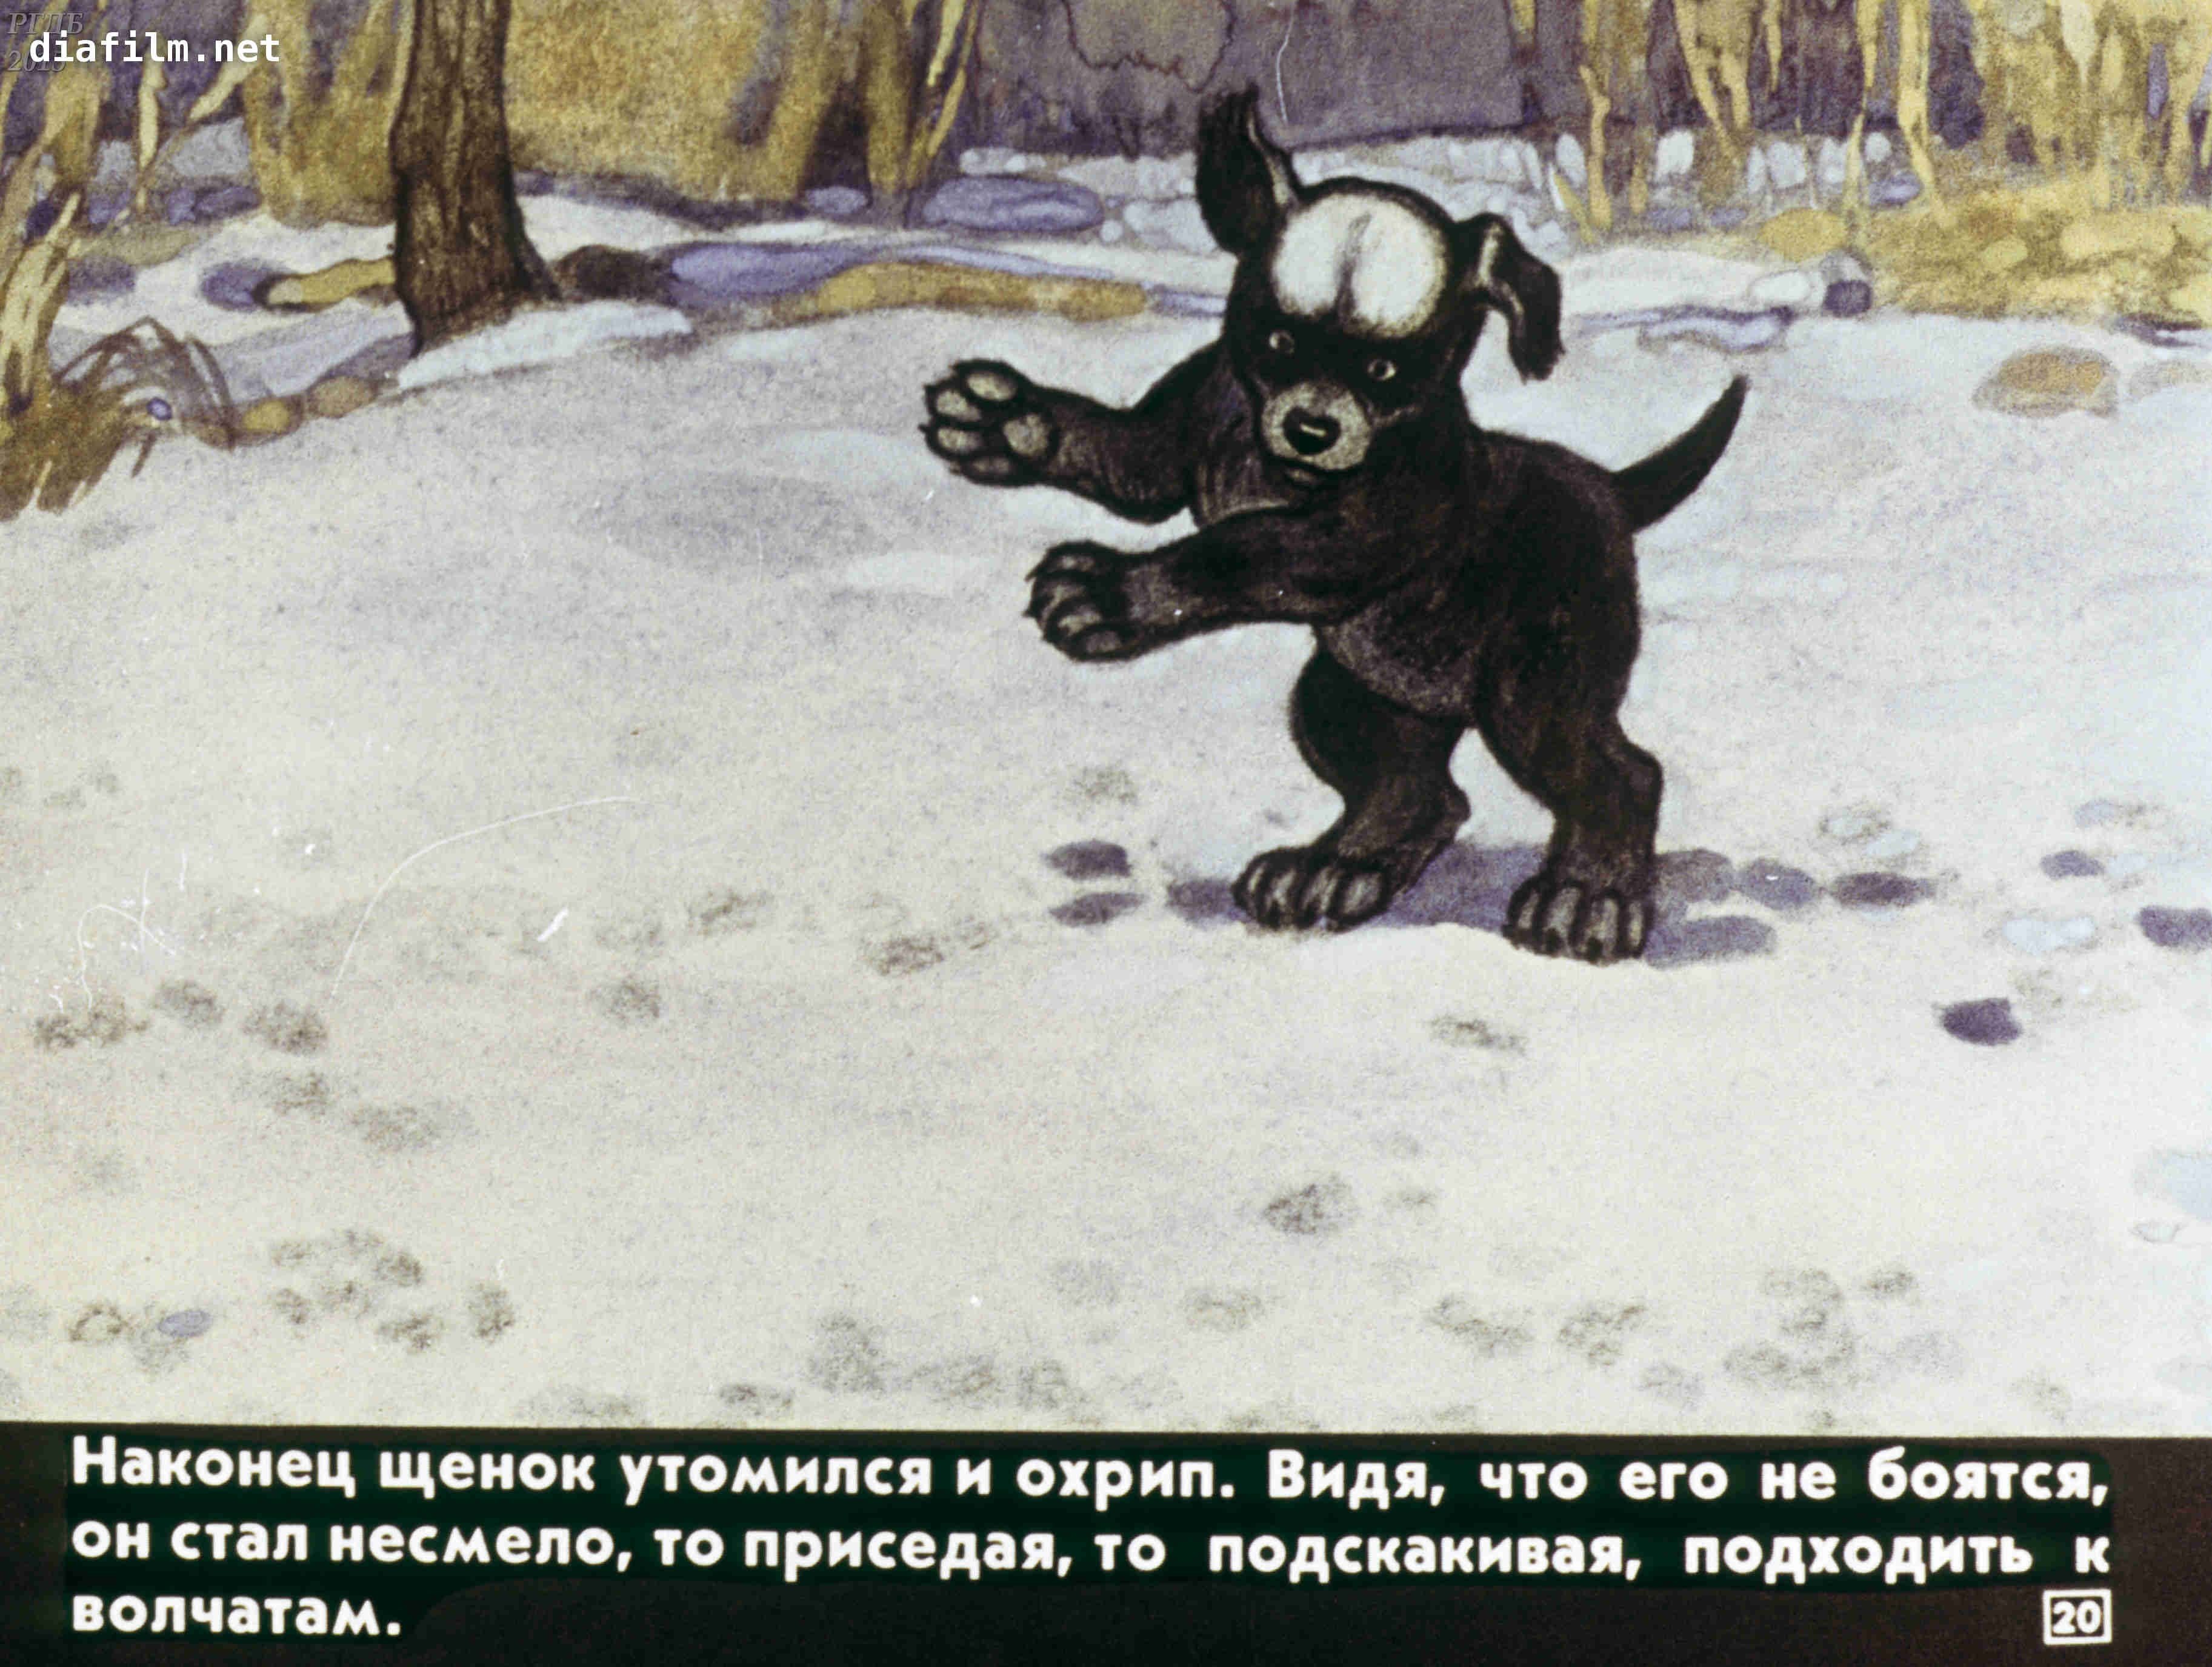 Иллюстрация к рассказу белолобый